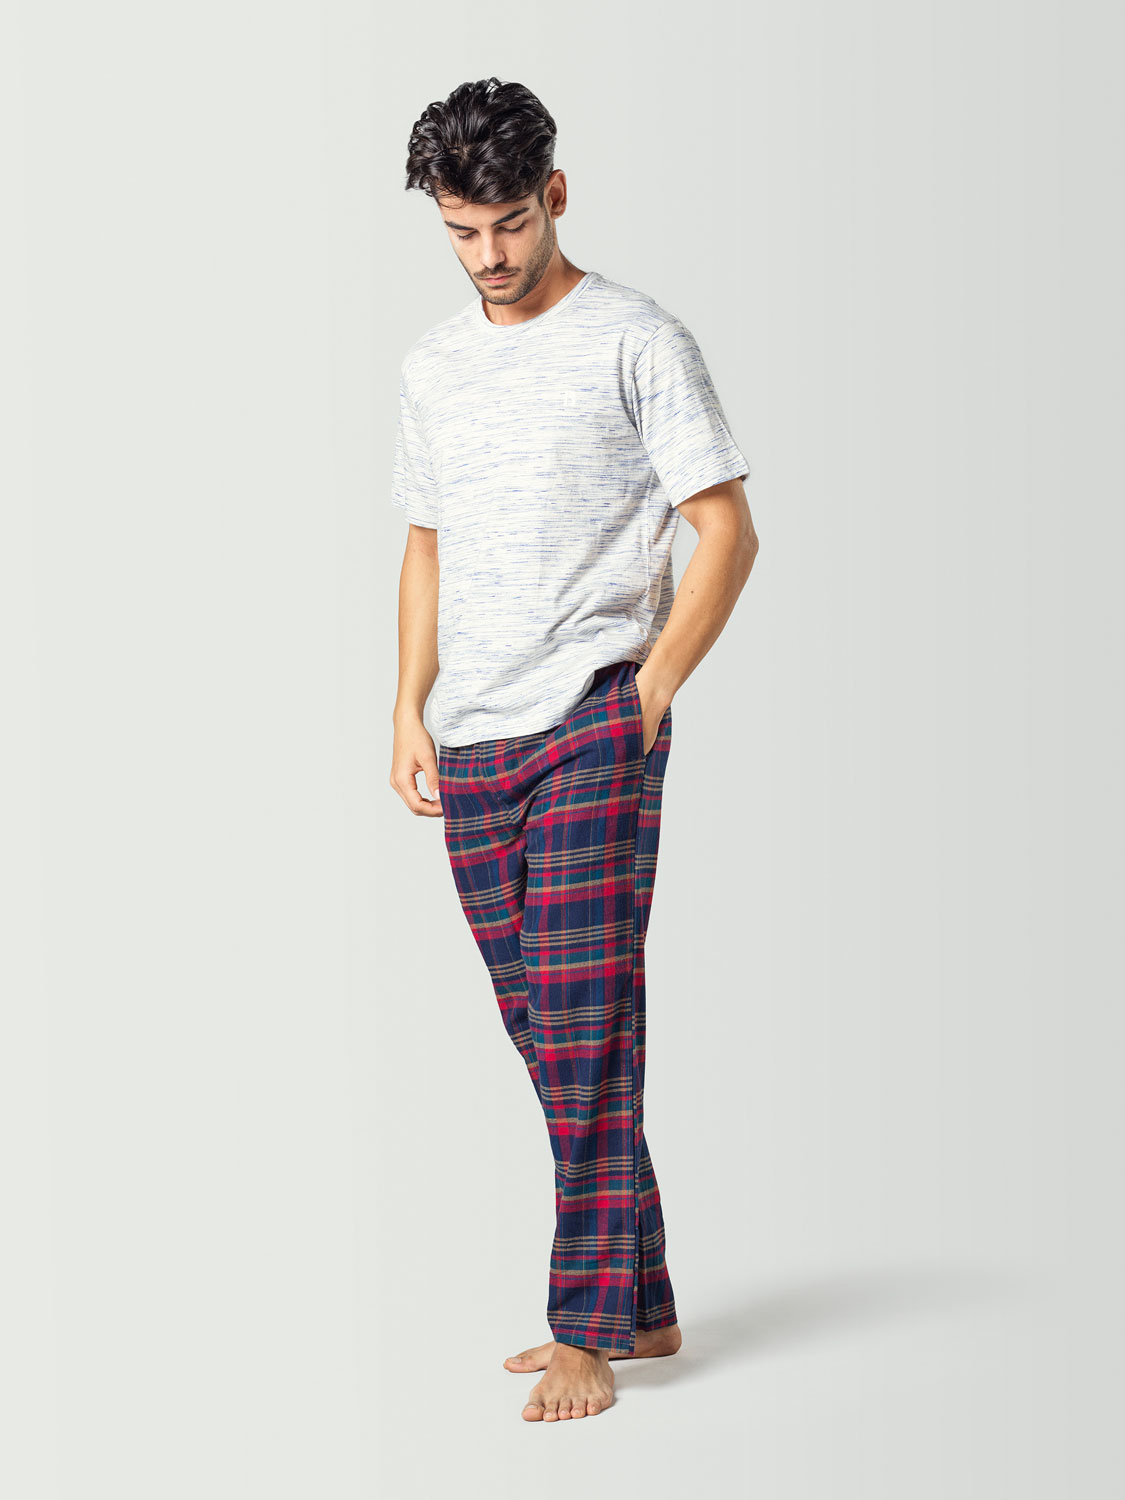 Pijama para hombre con camiseta de manga corta blanca y pantalón a cuadros azul y rojo